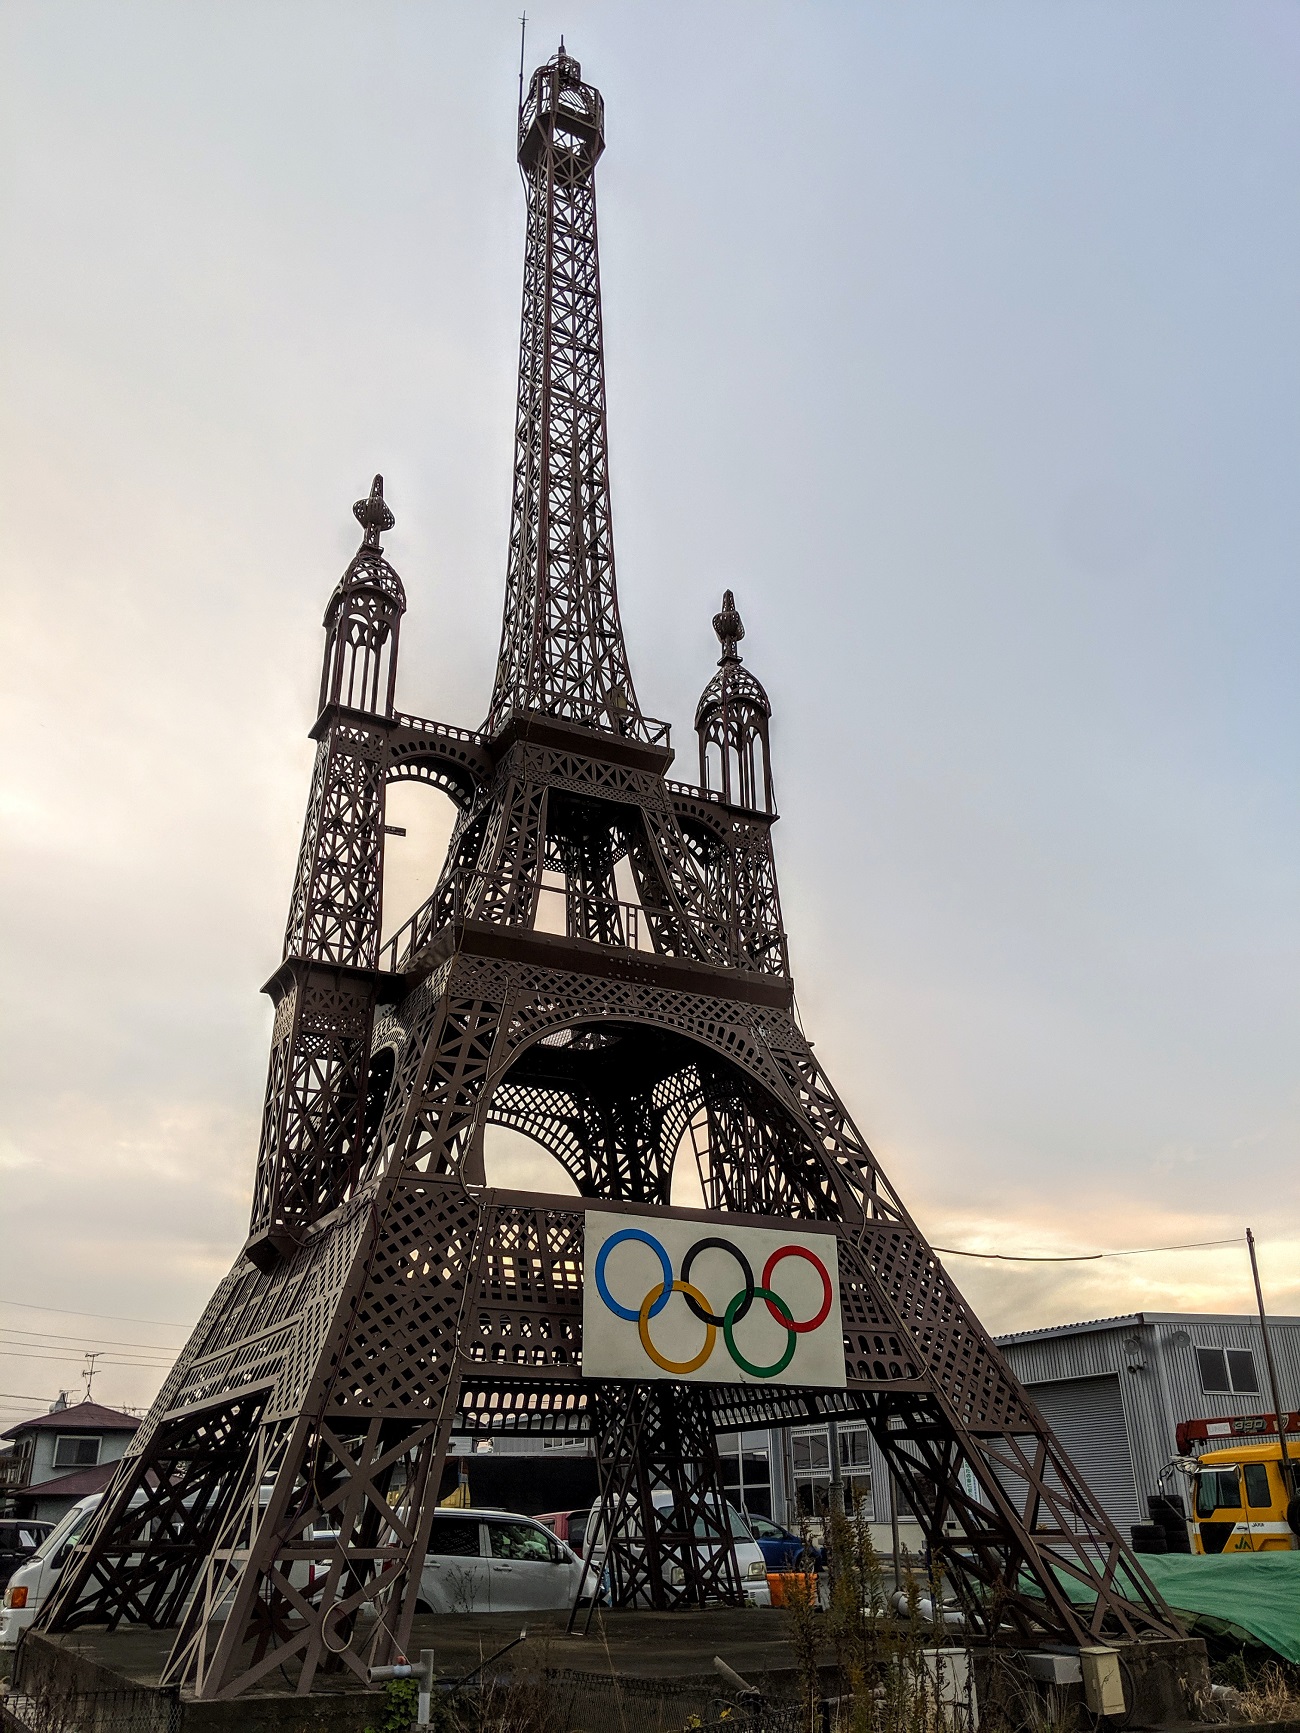 パリじゃない 佐賀のエッフェル塔は パリの幻の改造計画 を暇つぶしで実現させた激ヤバ芸術タワーだった ロケットニュース24